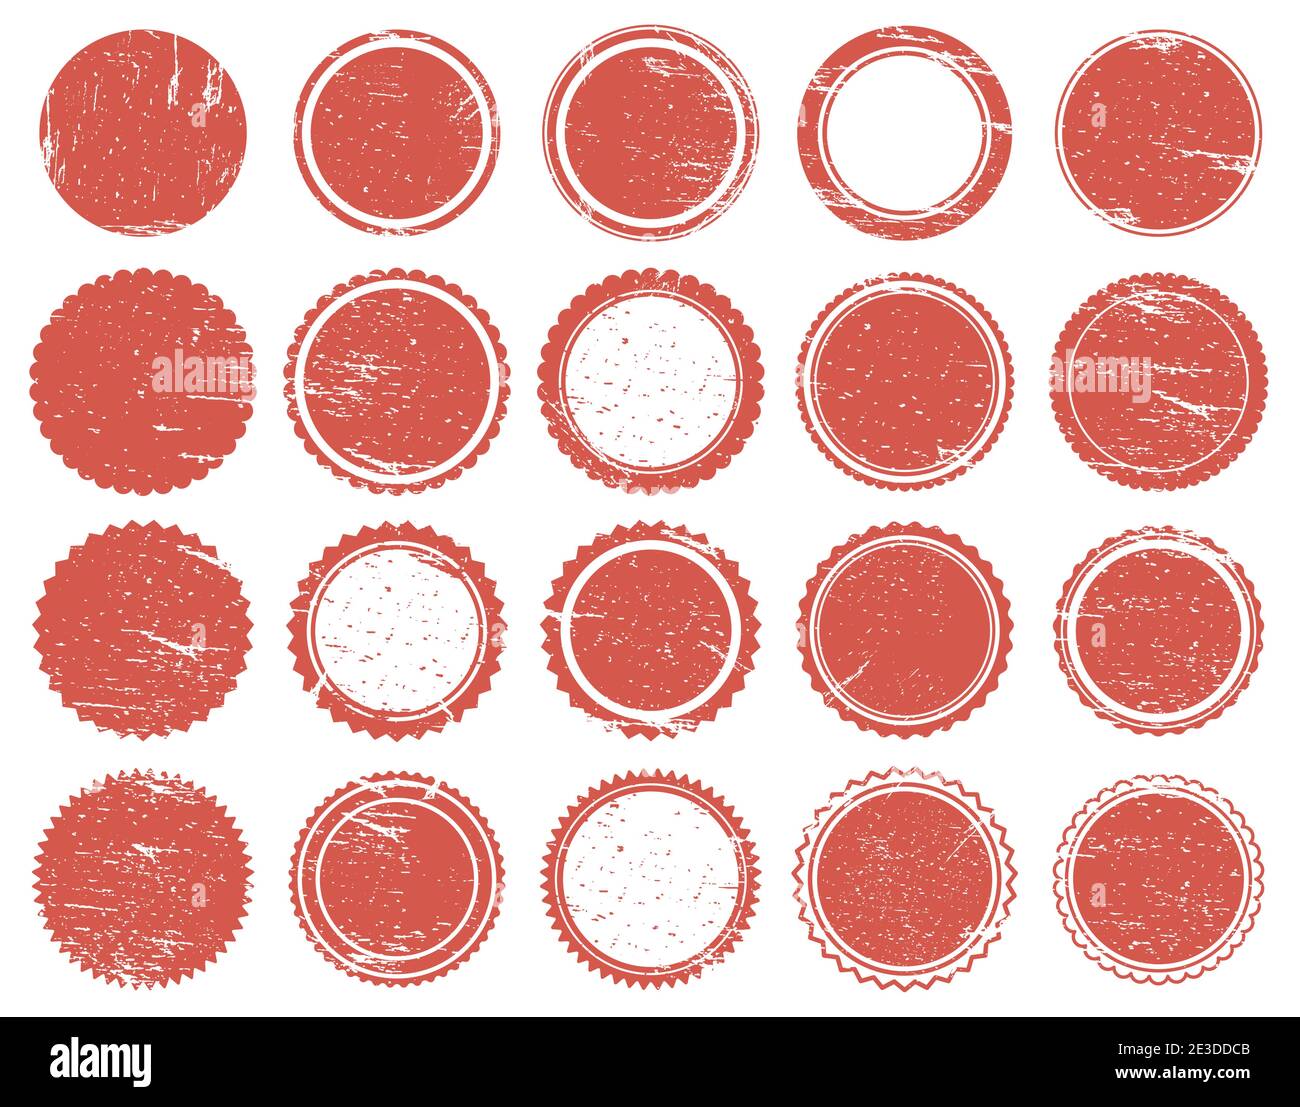 Grunge Texturstempel. Gummi roten Kreis Stempel, verzweifelte Textur roten Vintage-Marken. Verkauf runde Briefmarken Vektor-Illustration-Set Stock Vektor